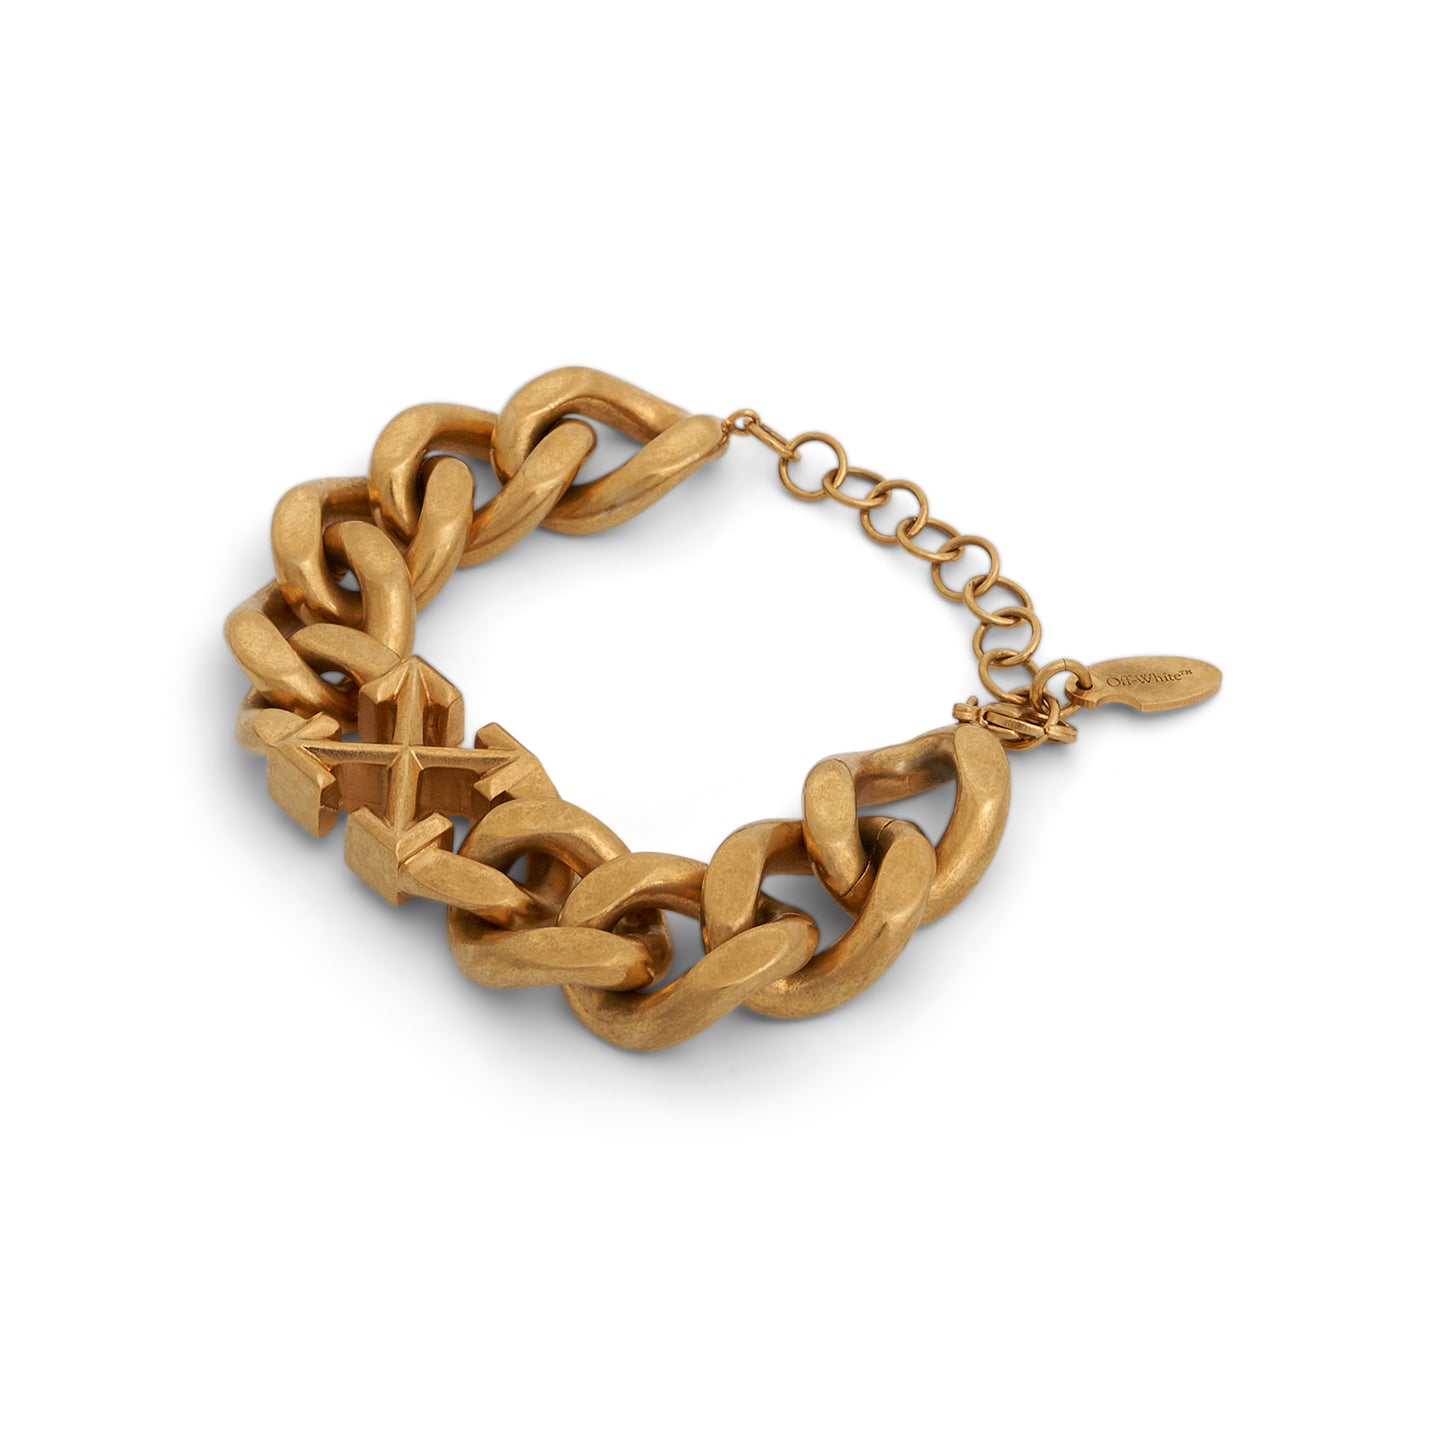 Arrow Motif Chained Bracelet in Gold